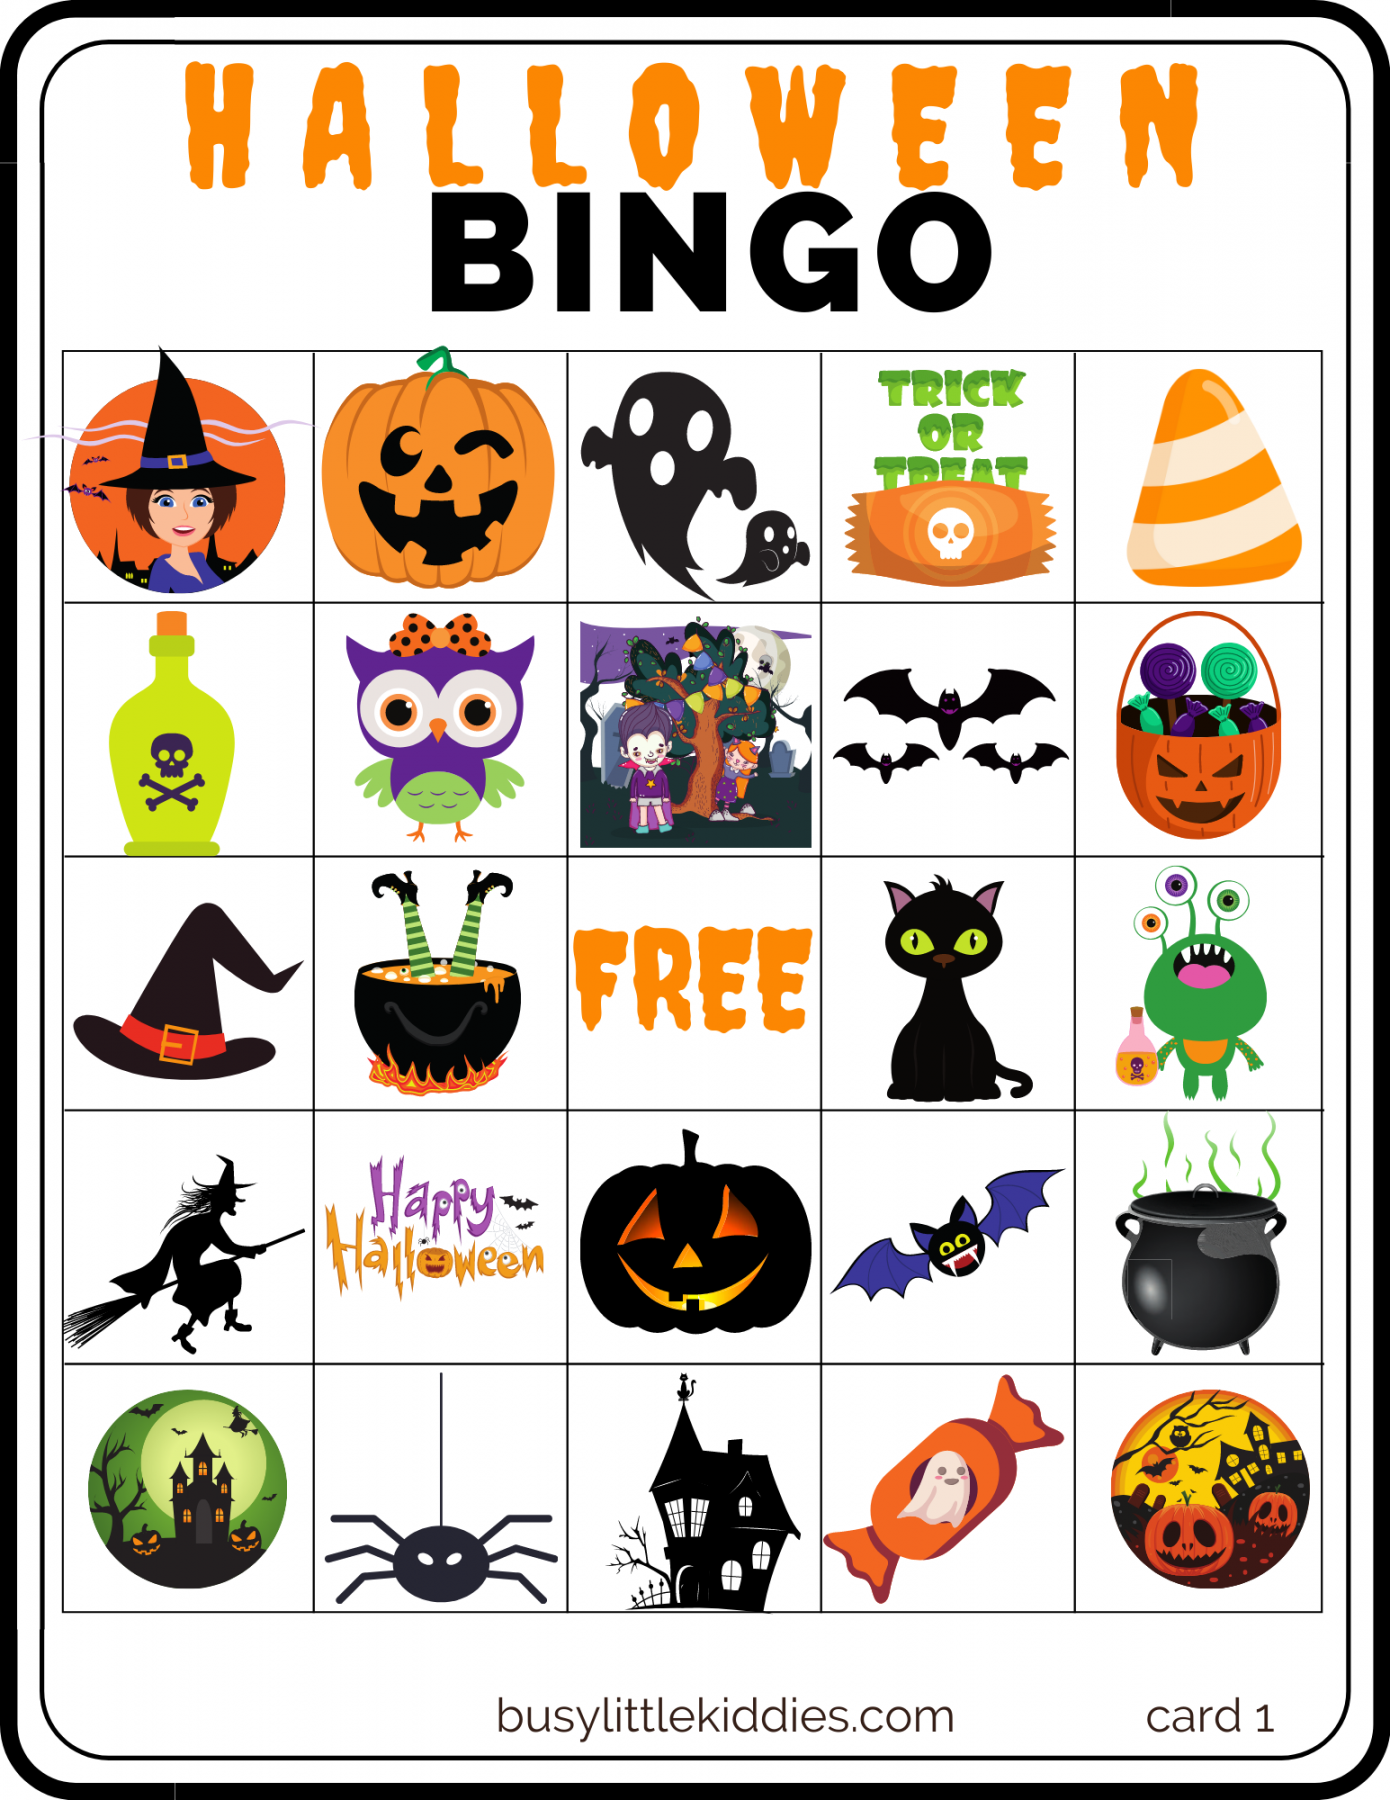 Free Printable Bingo Halloween - Printable - Halloween Bingo Free Printable with Pictures  players - Busy